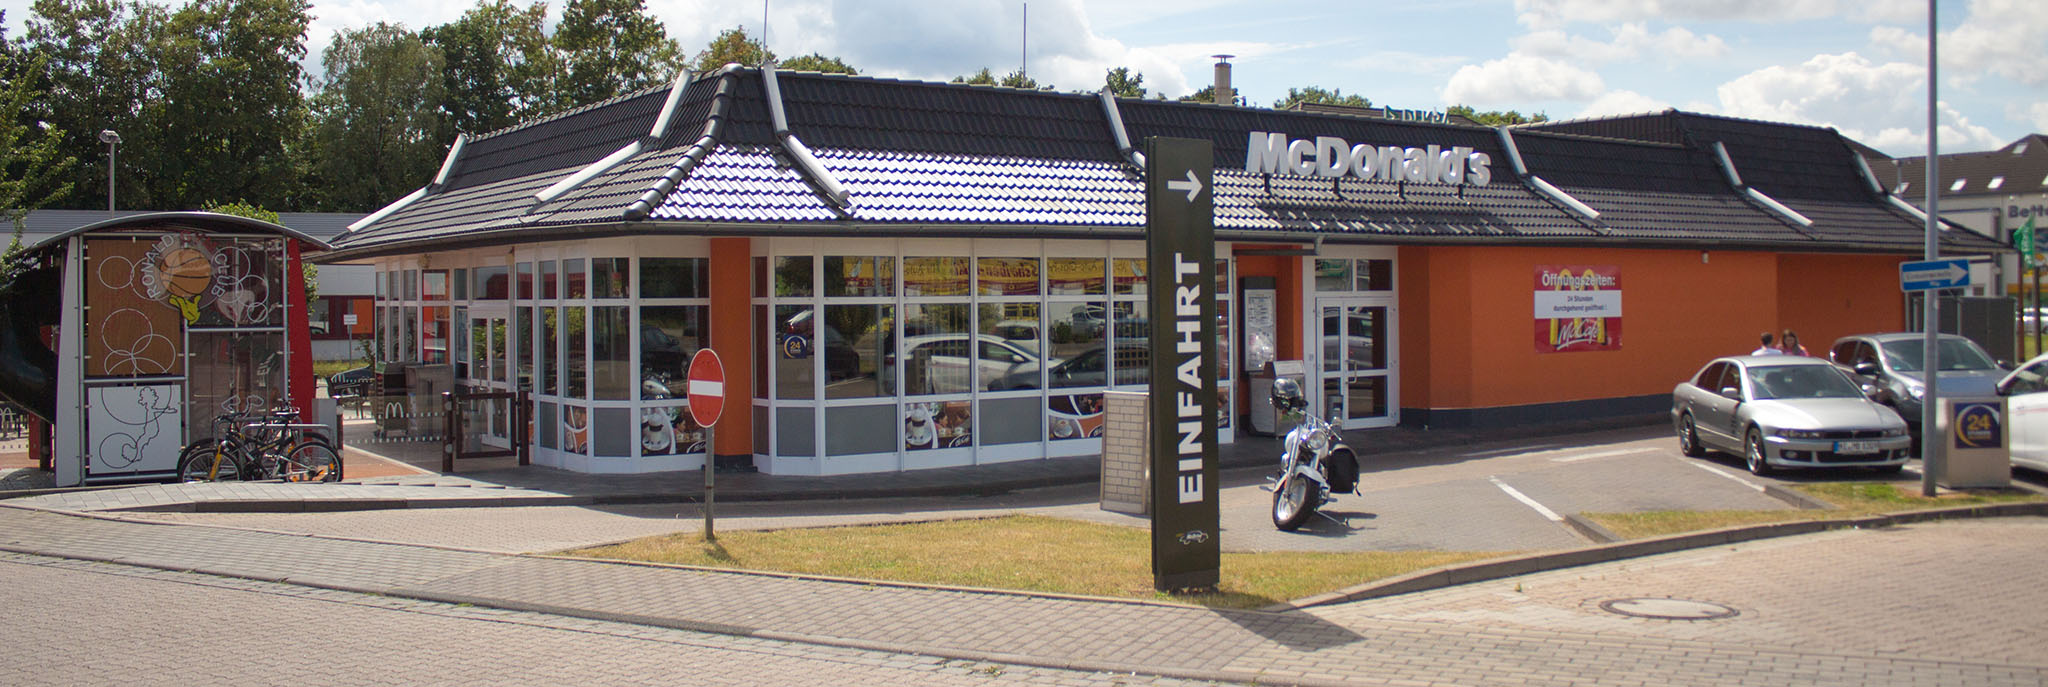 Das McDonald’s-Restaurant in Hildesheim (Bavenstedter Straße)